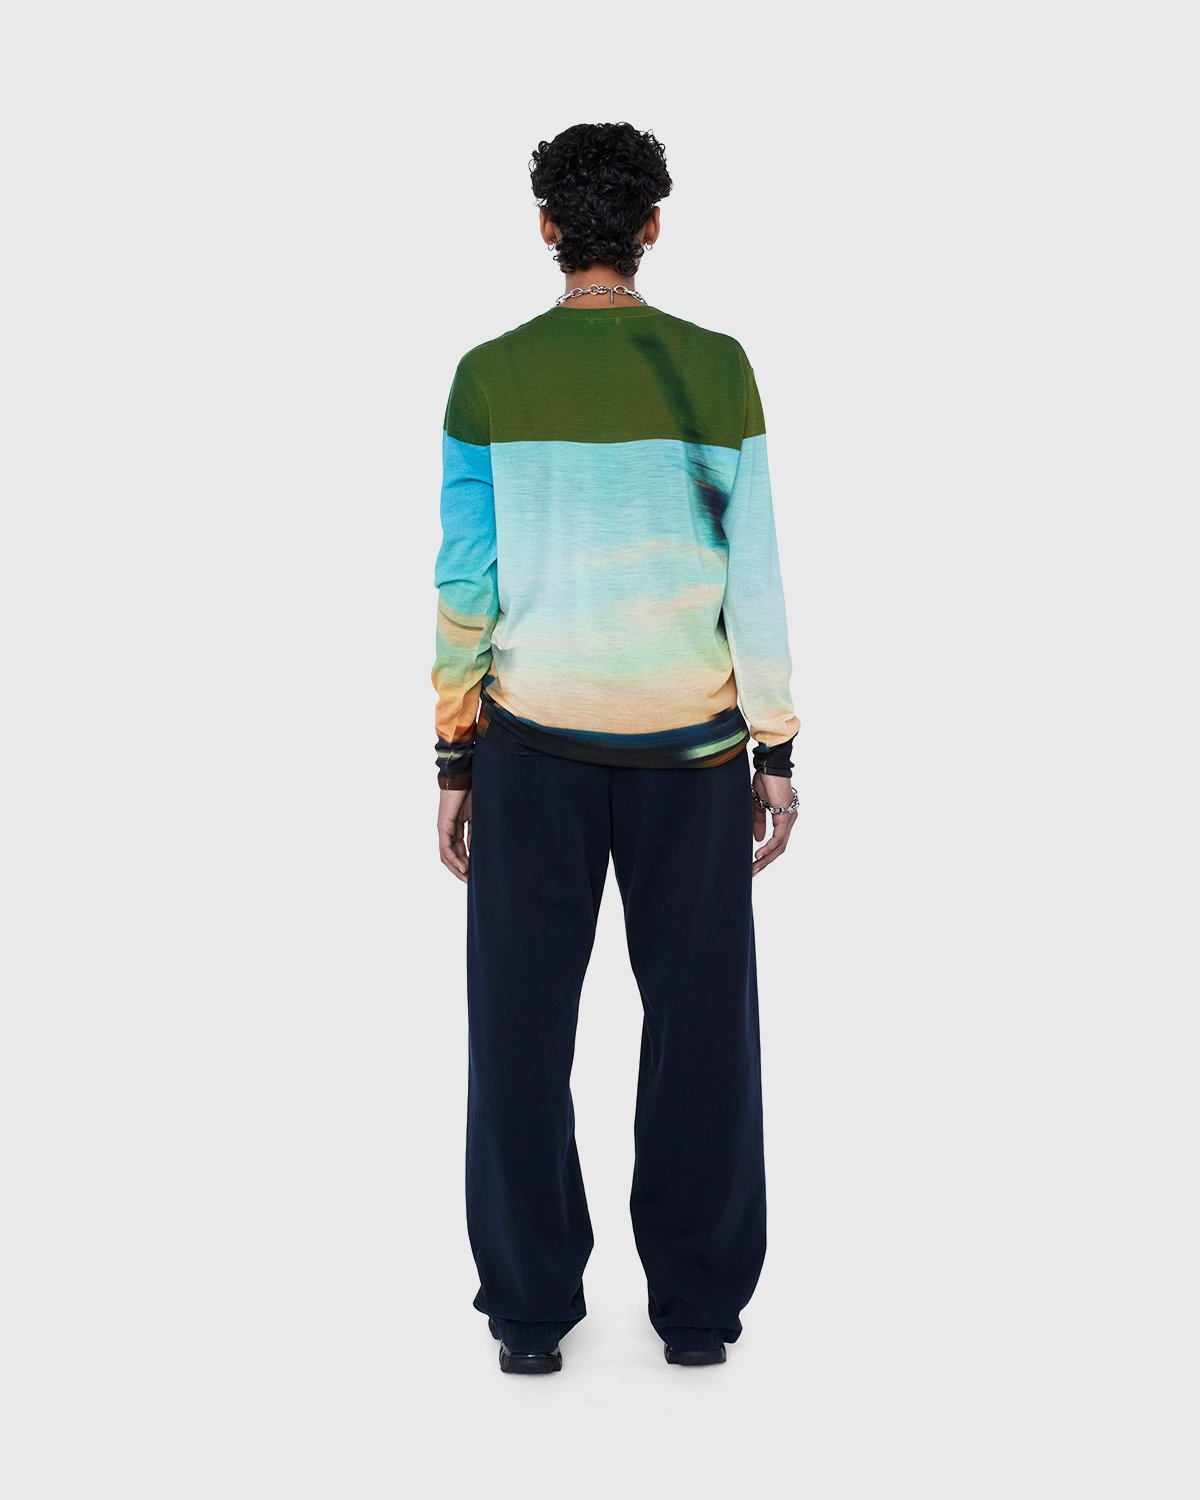 Dries van Noten – Jendrik Merino Sweater Dessin - Knitwear - Multi - Image 6